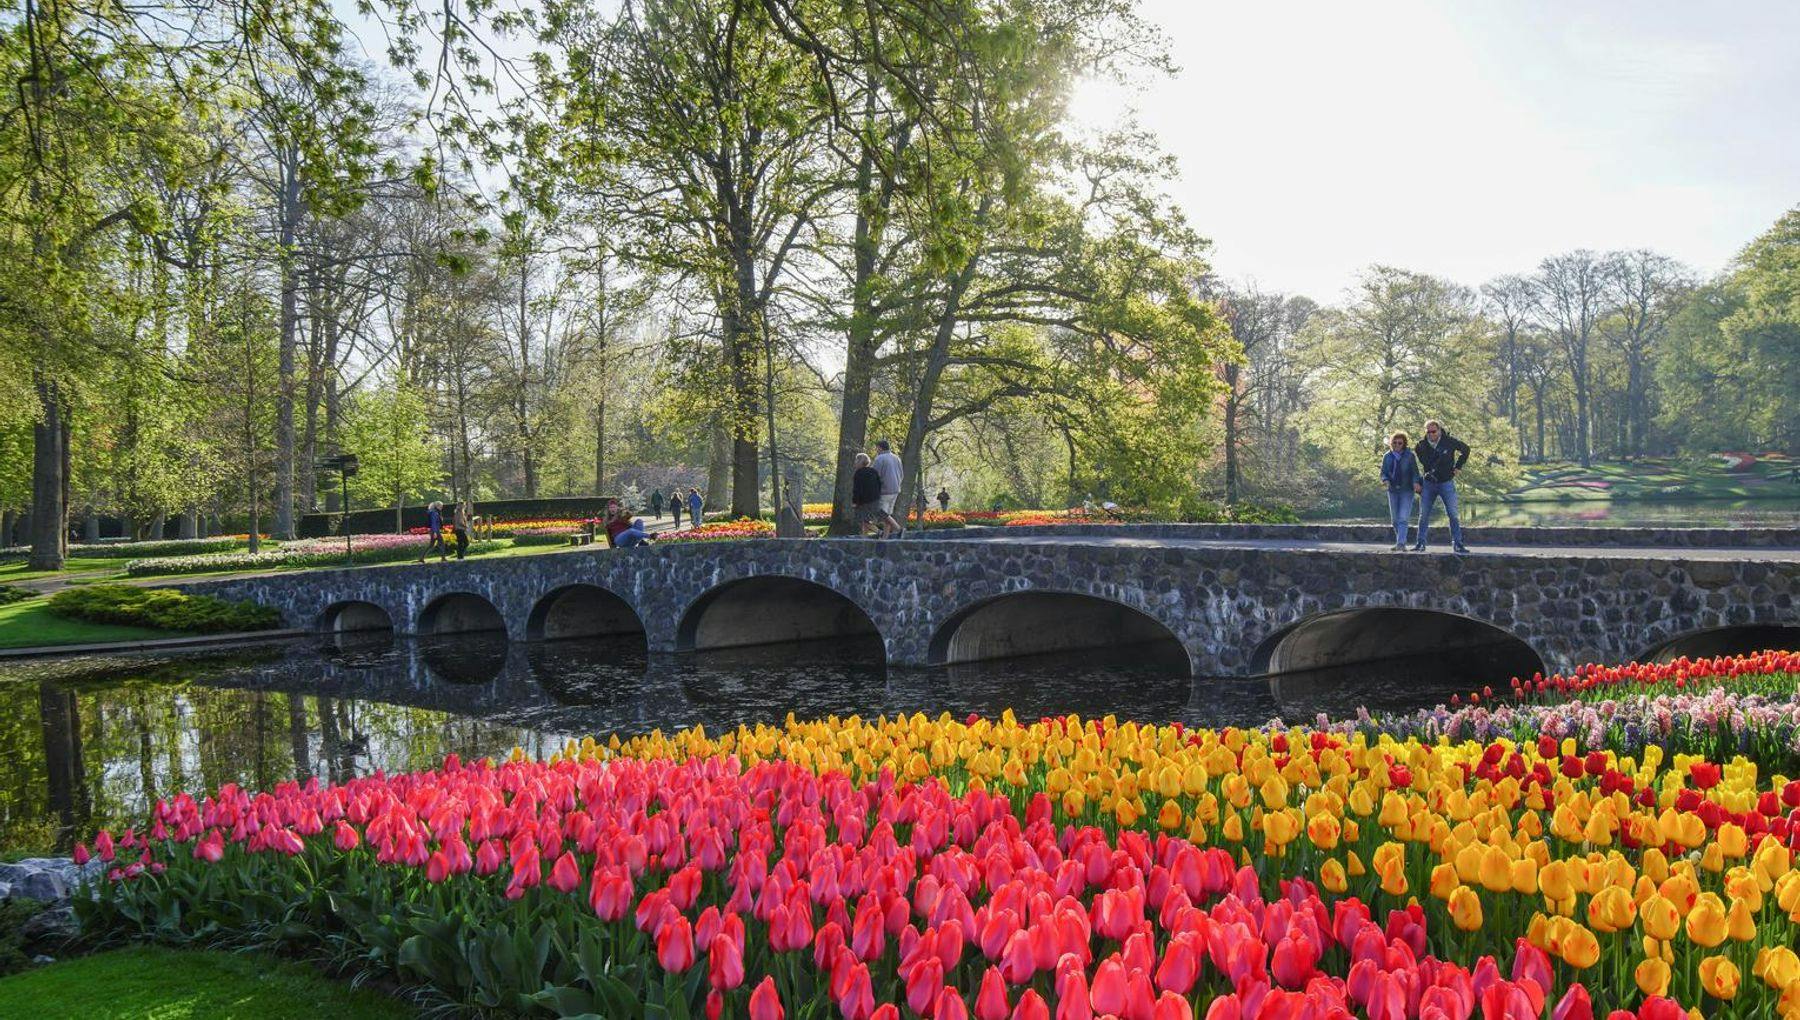 Bridge across water with tulips in Keukenhof gardens 2022